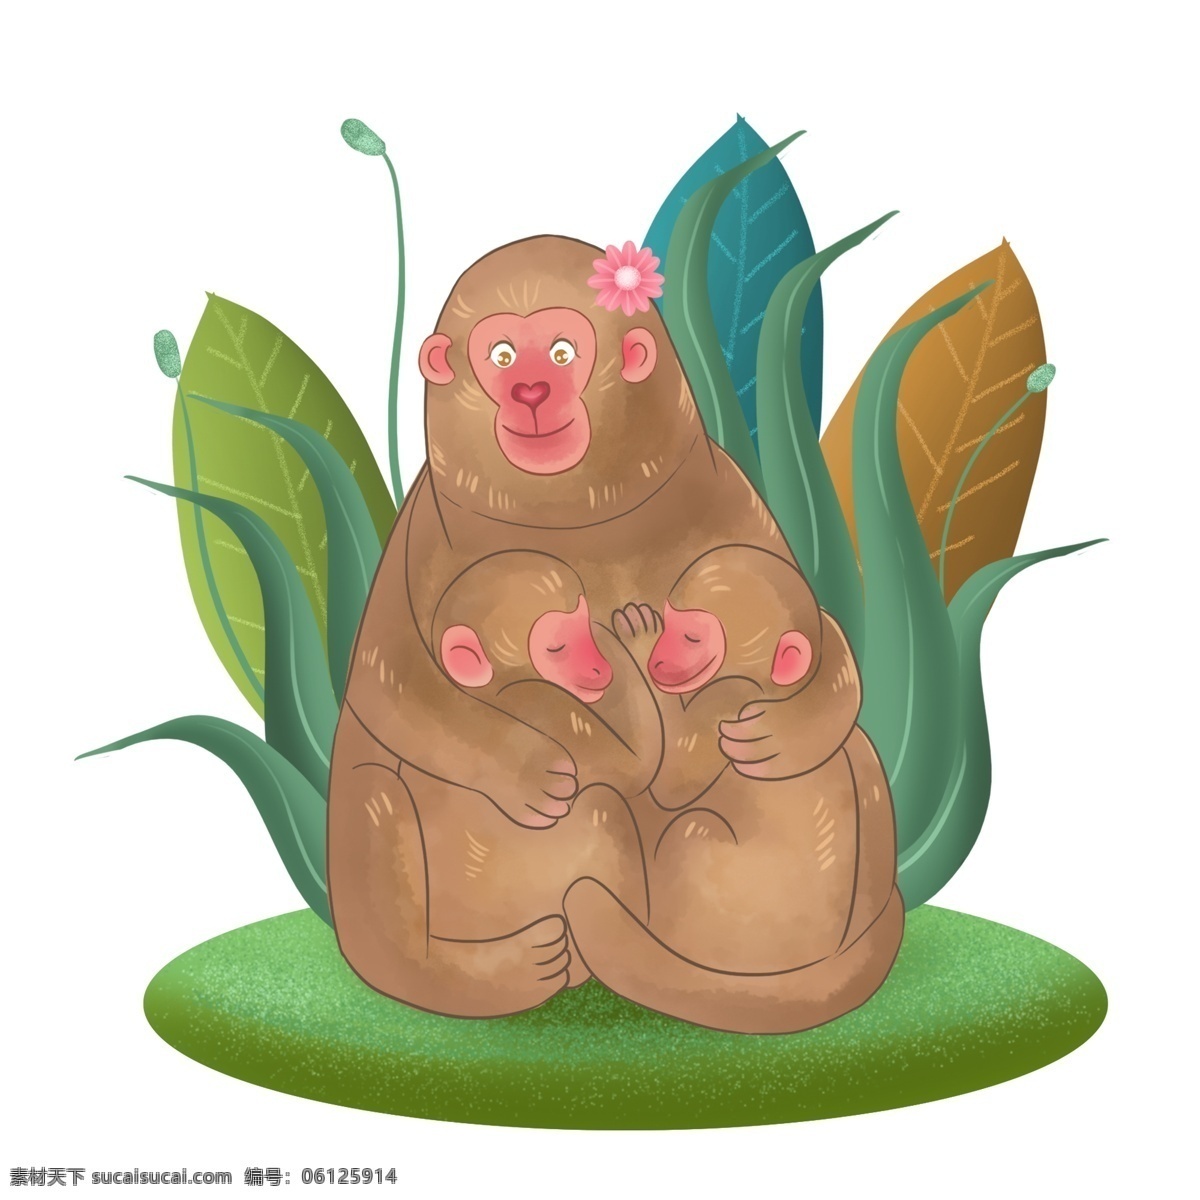 商用 母 猴 俩 幸福 孩子 母猴 可商用 手绘